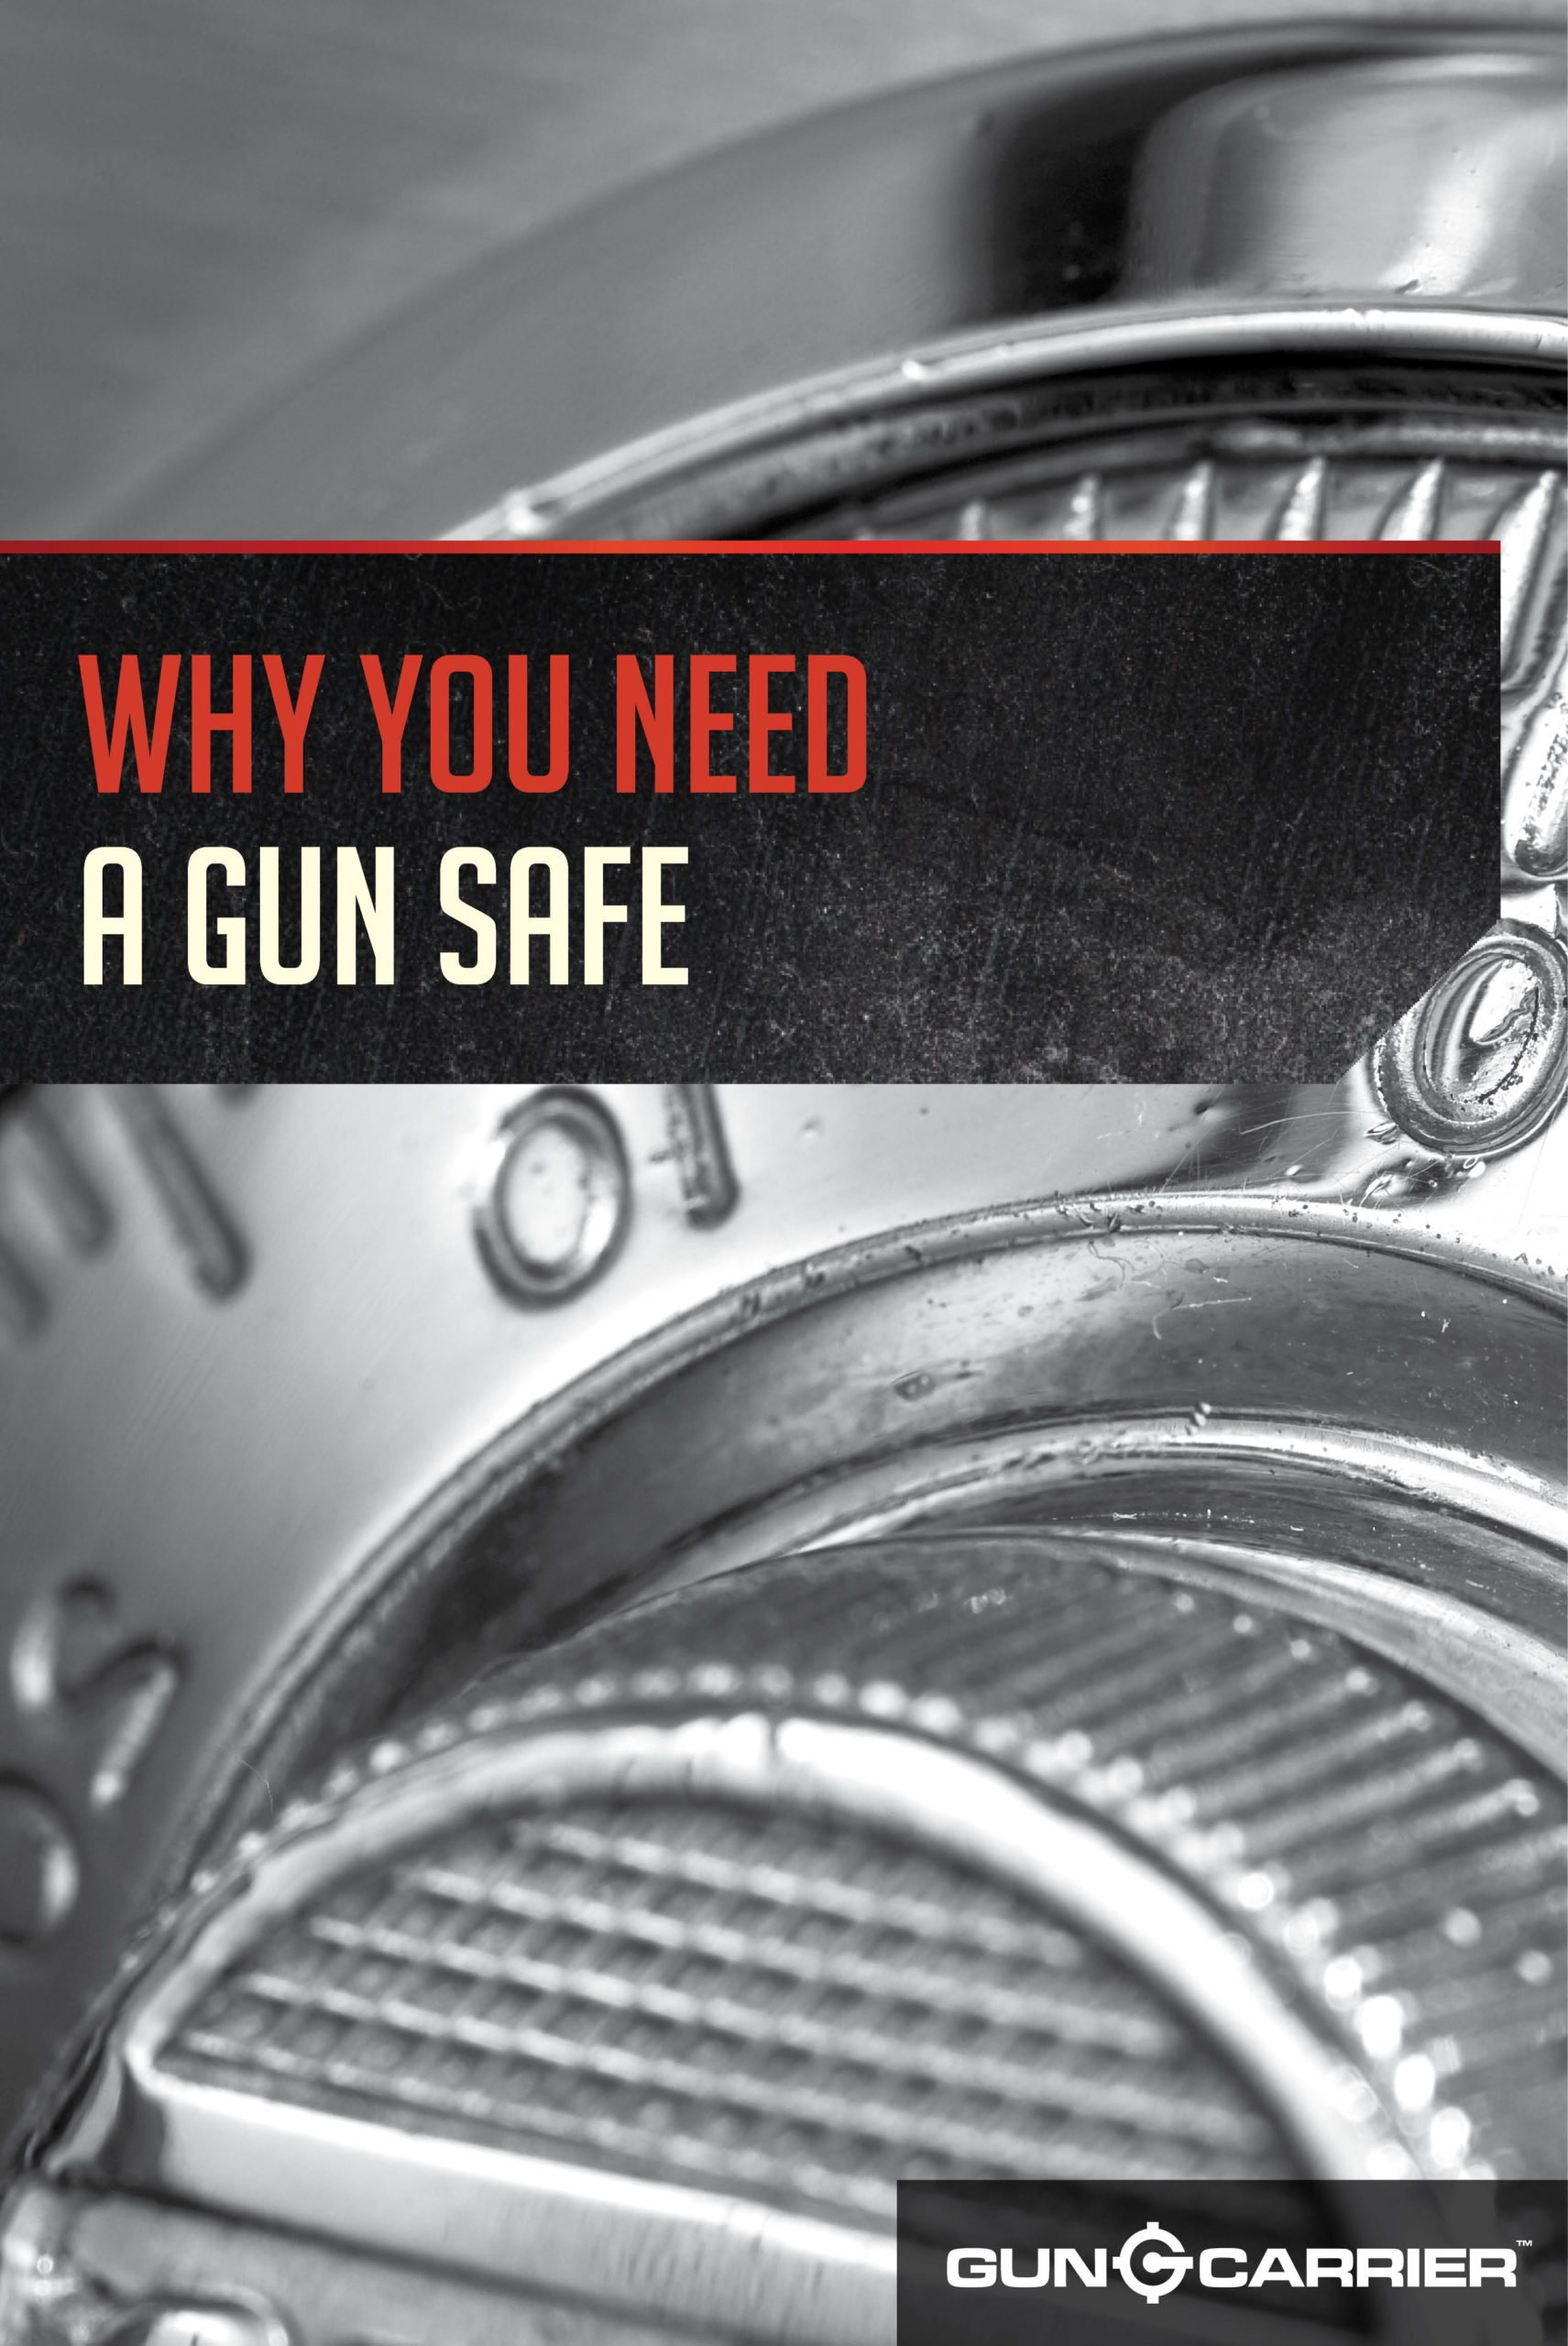 Why You Need a Gun Safe by Gun Carrier at https://guncarriernews.wpengine.com/advantages-gun-safe